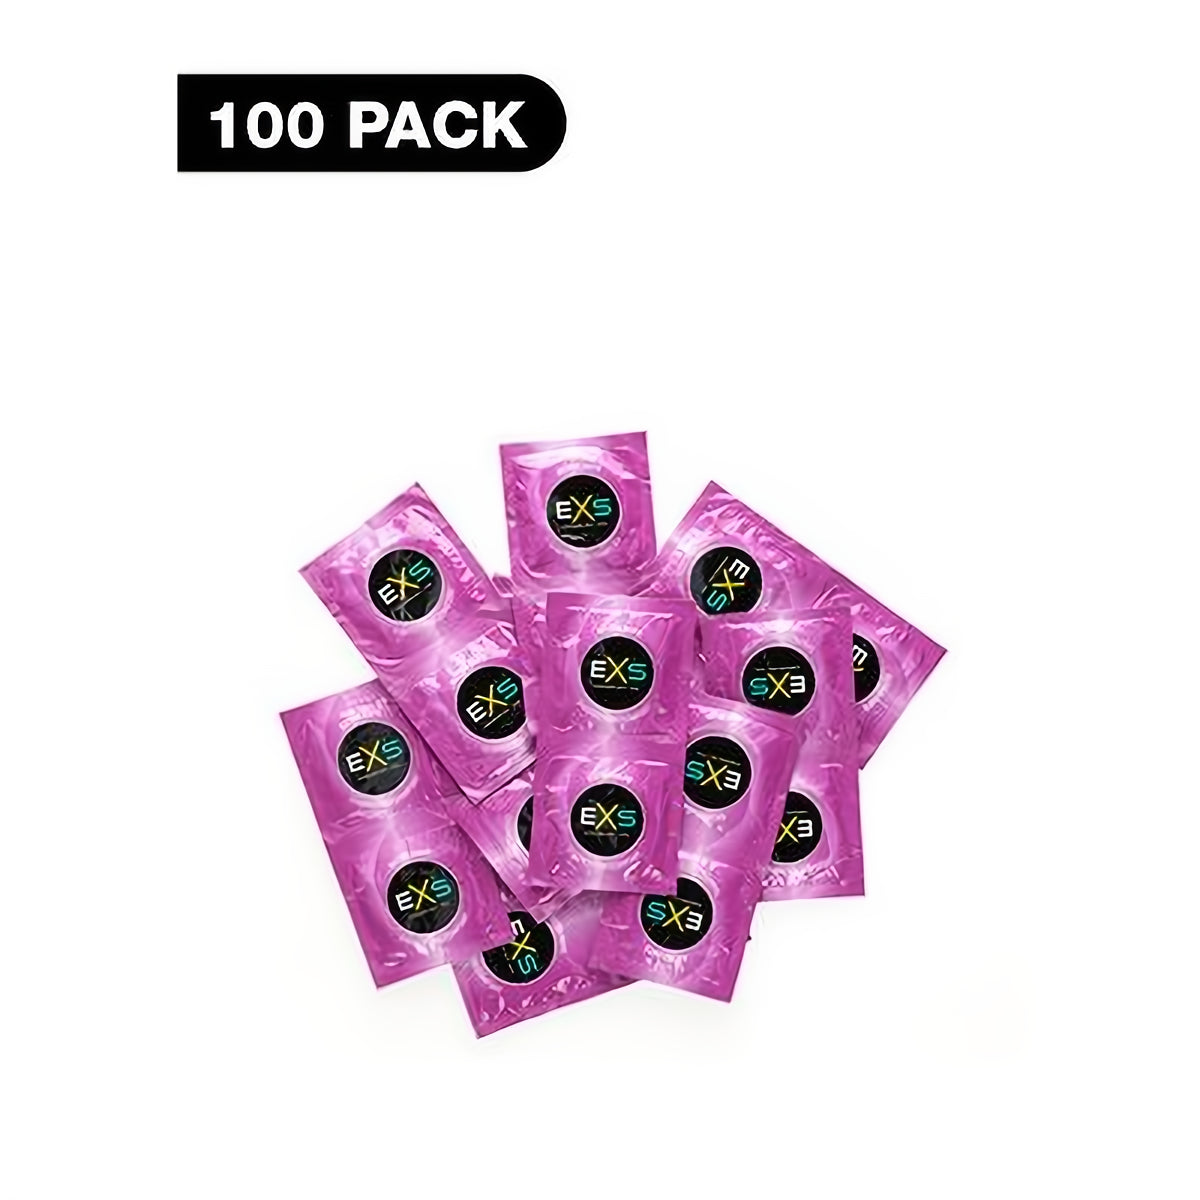 EXS Extra Safe - Condoms - 100 Pieces - EroticToyzProducten,Veilige Seks, Verzorging Hulp,Veilige Seks,Condooms voor Mannen,,MannelijkEXS